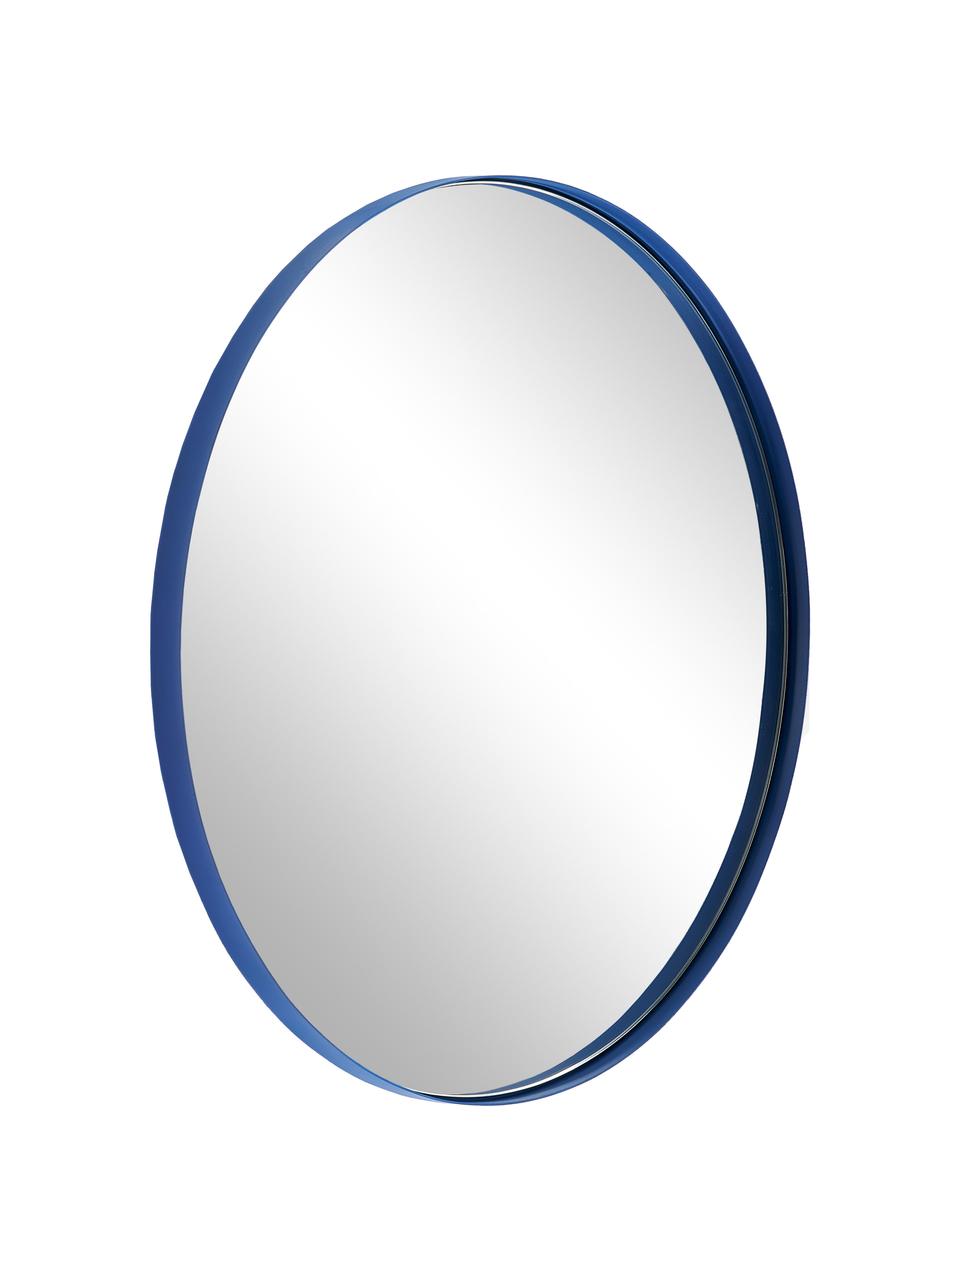 Kulaté nástěnné zrcadlo s kovovým rámem Ivy, Modrá, Ø 55 cm, H 3 cm